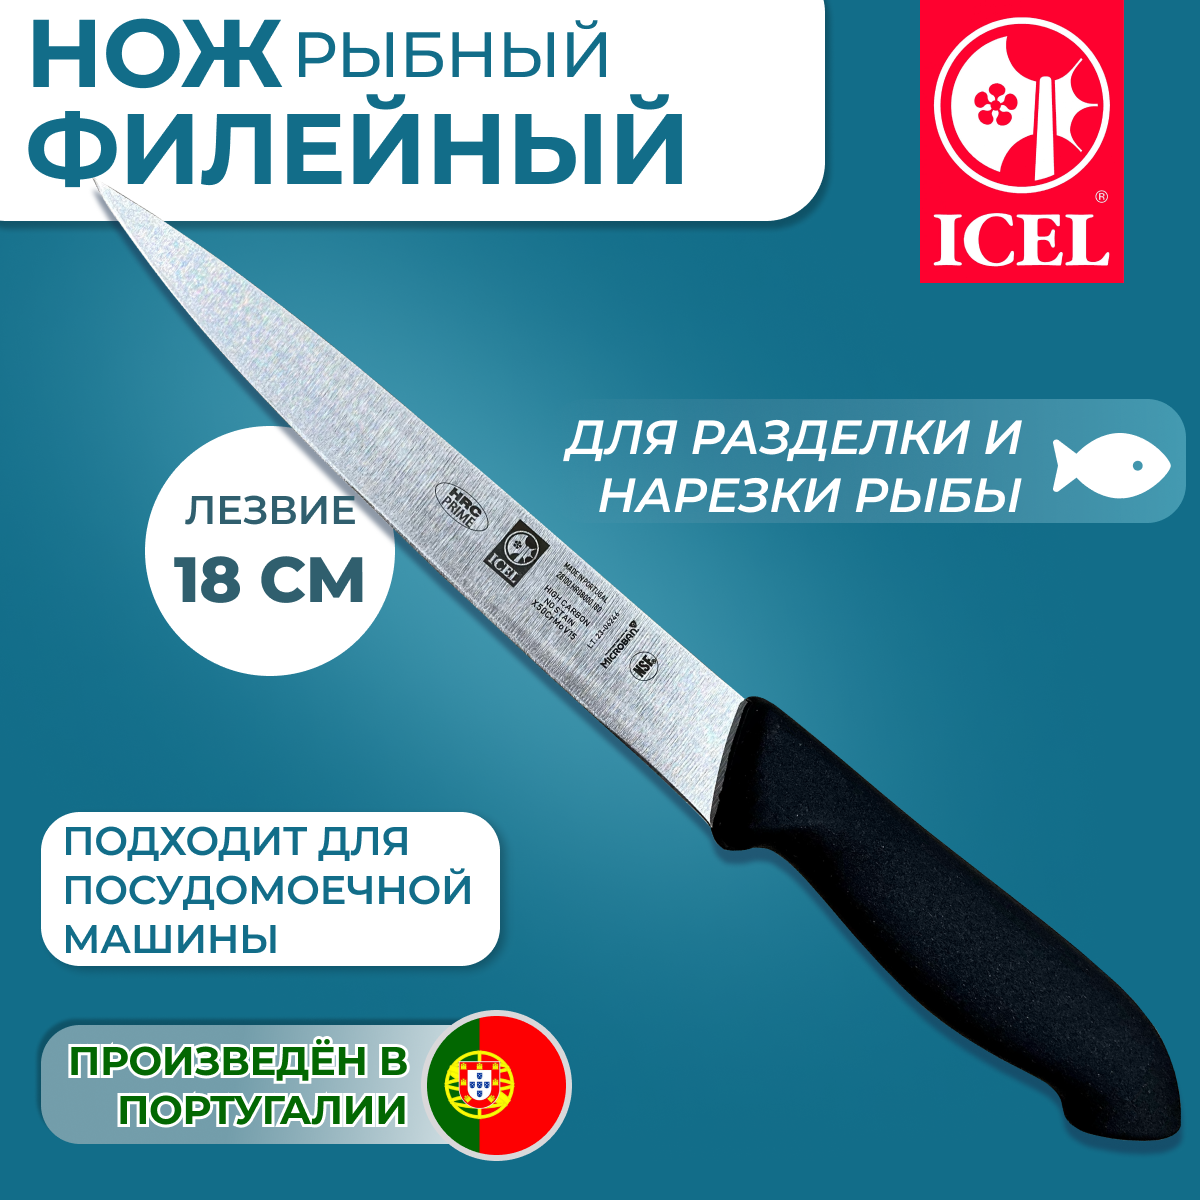 Нож ICEL филейный рыбный, лезвие 18 см, ручка с антибактериальной защитой Microban.